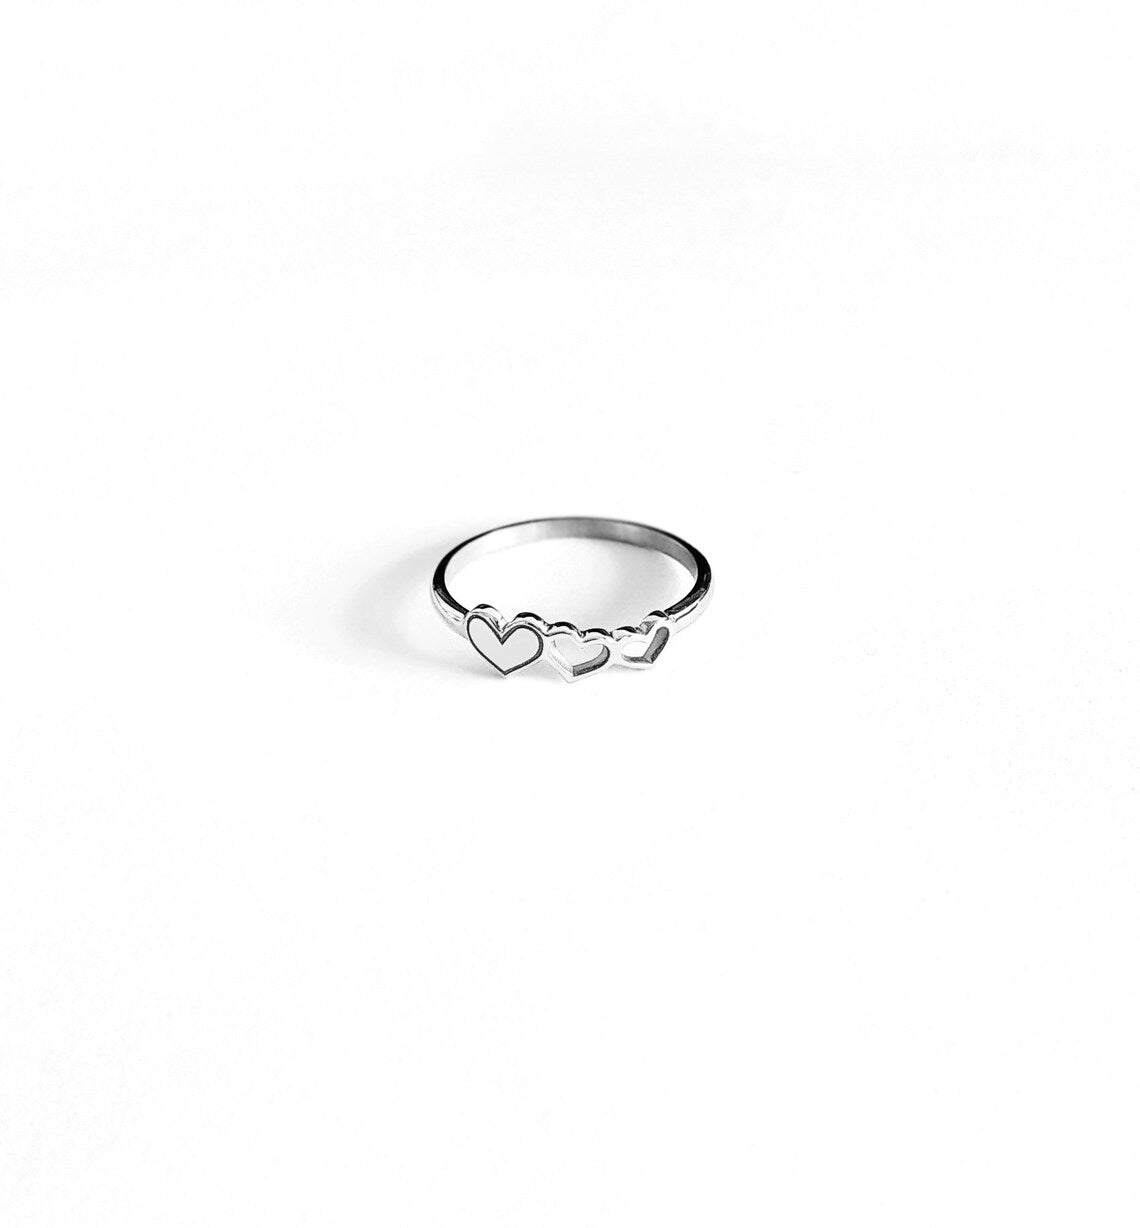 Triple Heart Minimal Promise Rings For Women - 14k Gold Vermeil Rings